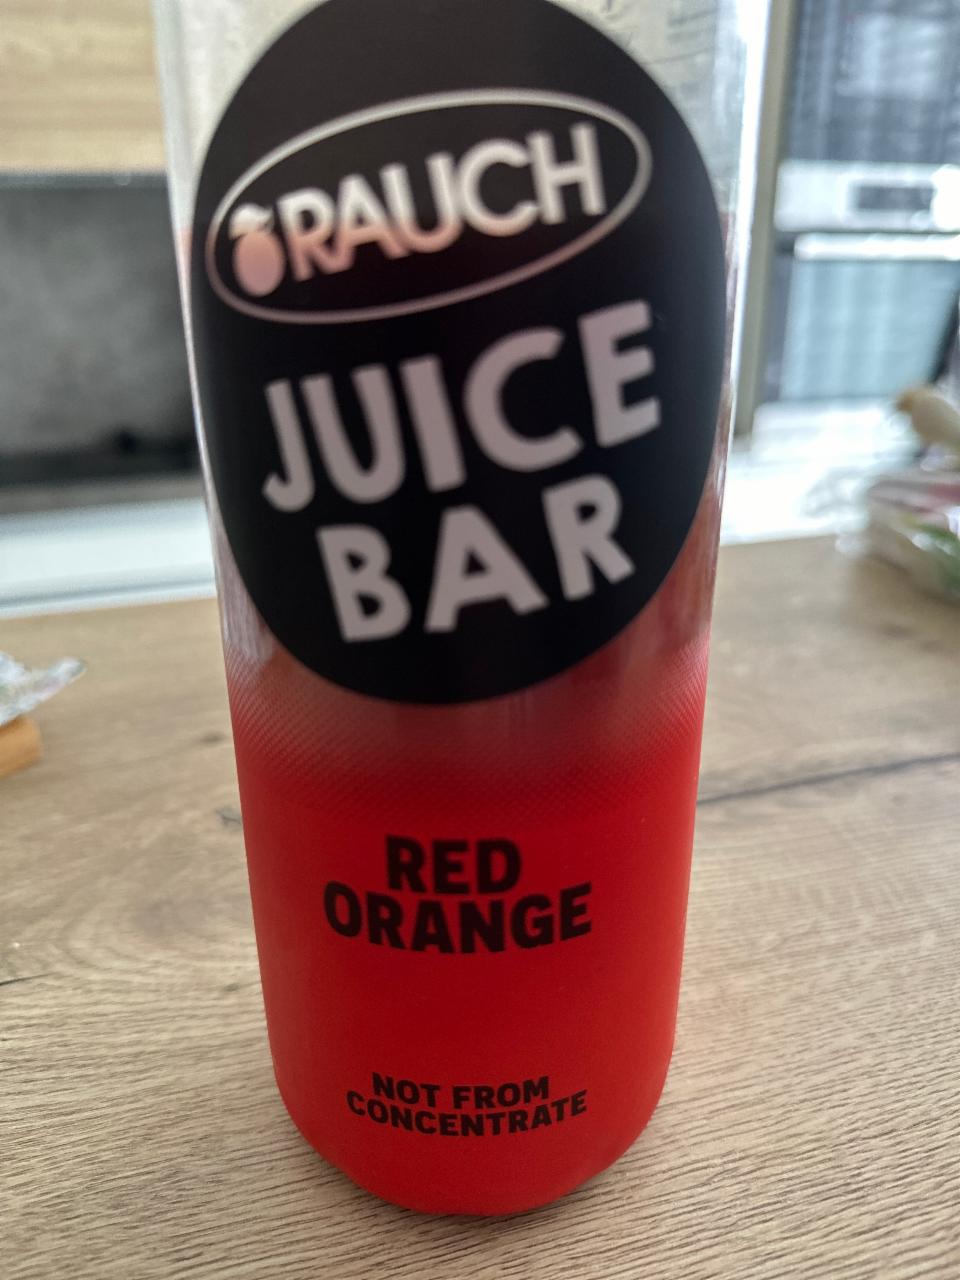 Fotografie - Rauch juice bar red orange